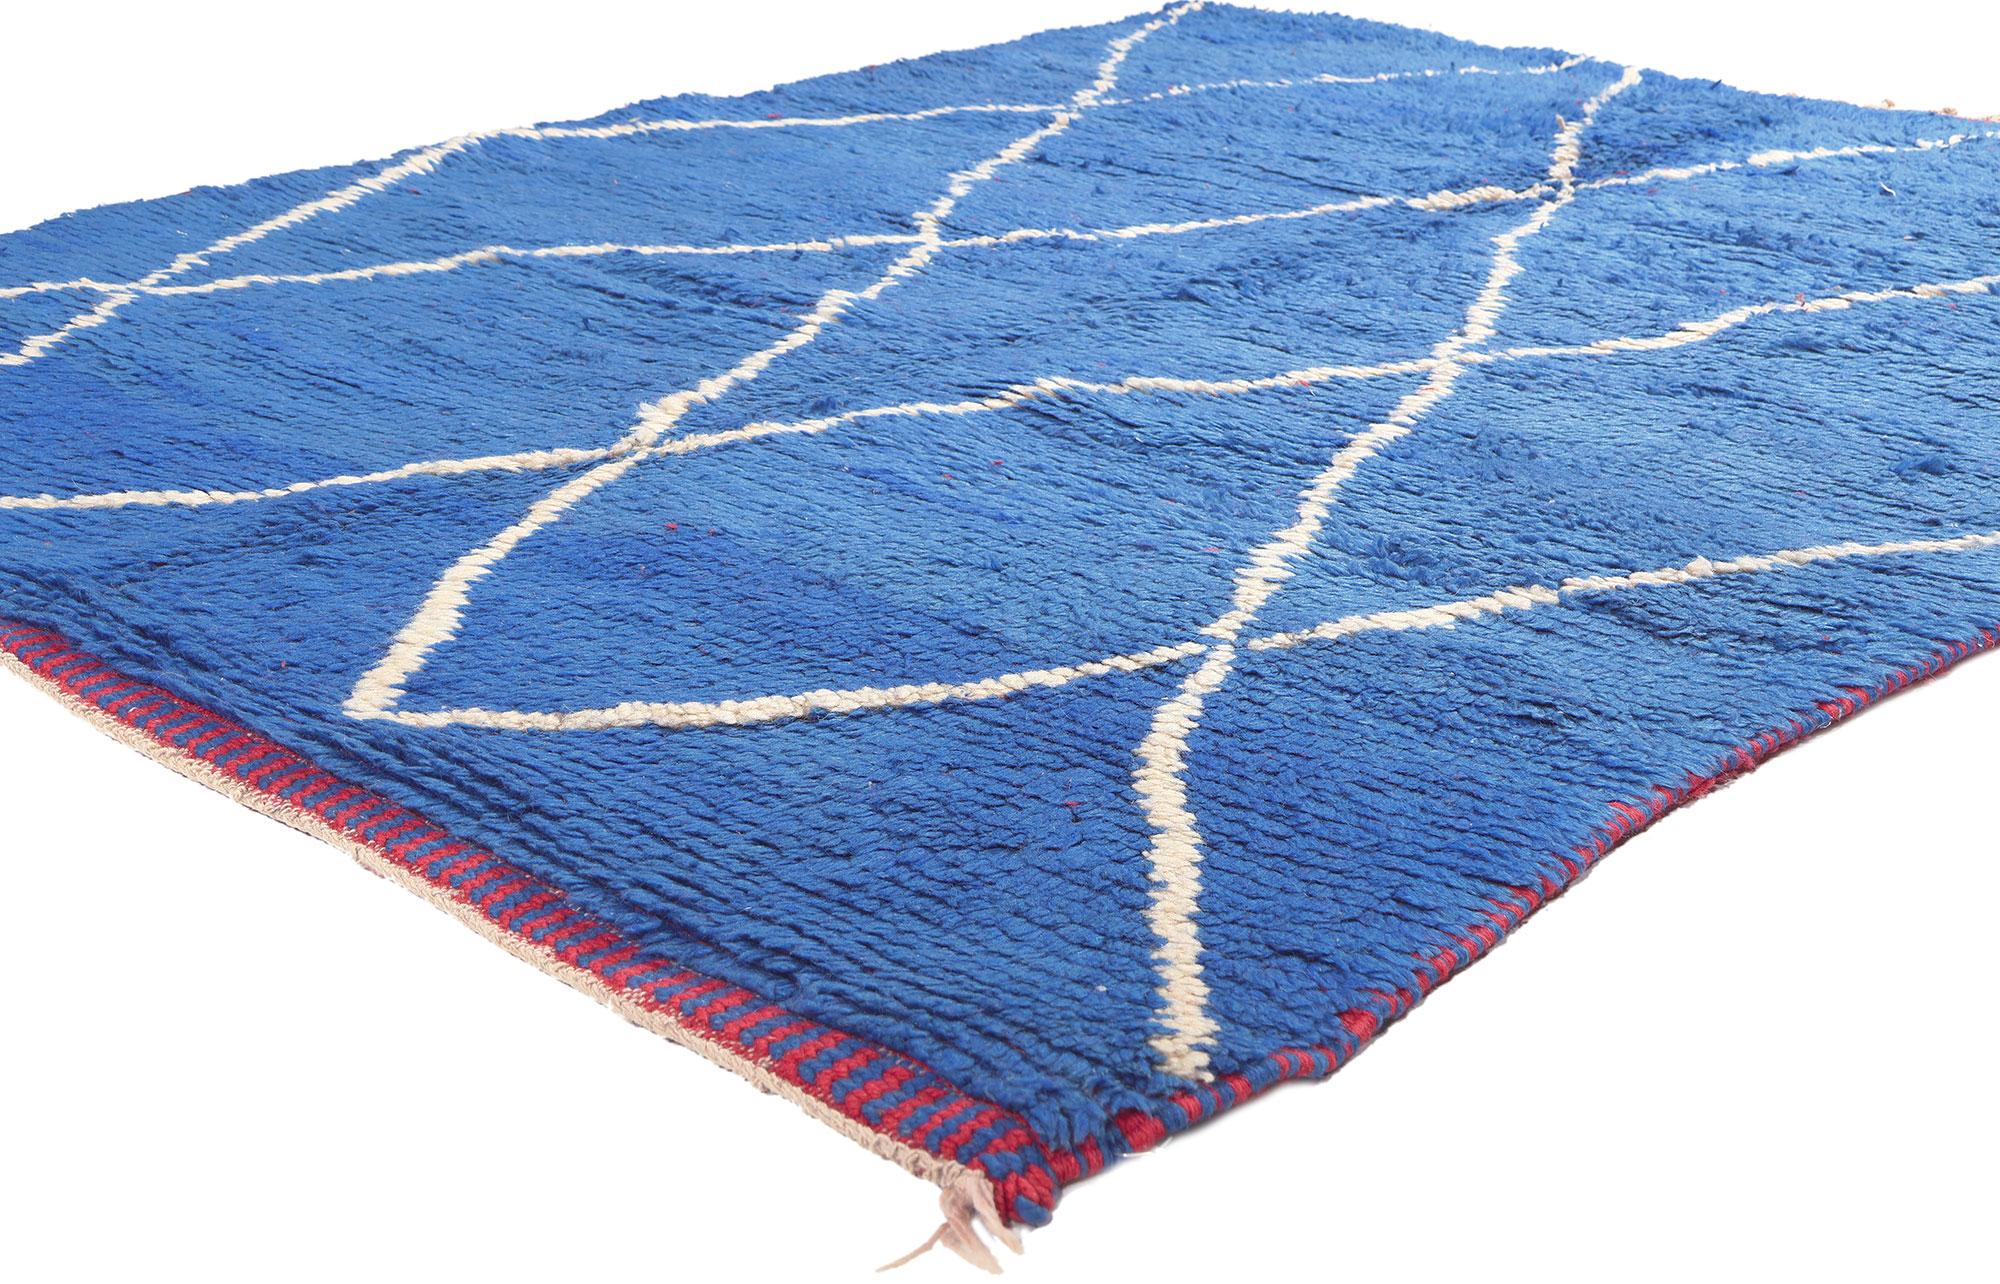 20531 Tapis marocain réversible rouge et bleu, 05'03 x 06'10. 
Ce tapis berbère marocain réversible, orné d'une touche tribale moderne qui respire l'audace et le raffinement, offre un spectre vibrant allant du rouge ravageur au bleu calme et